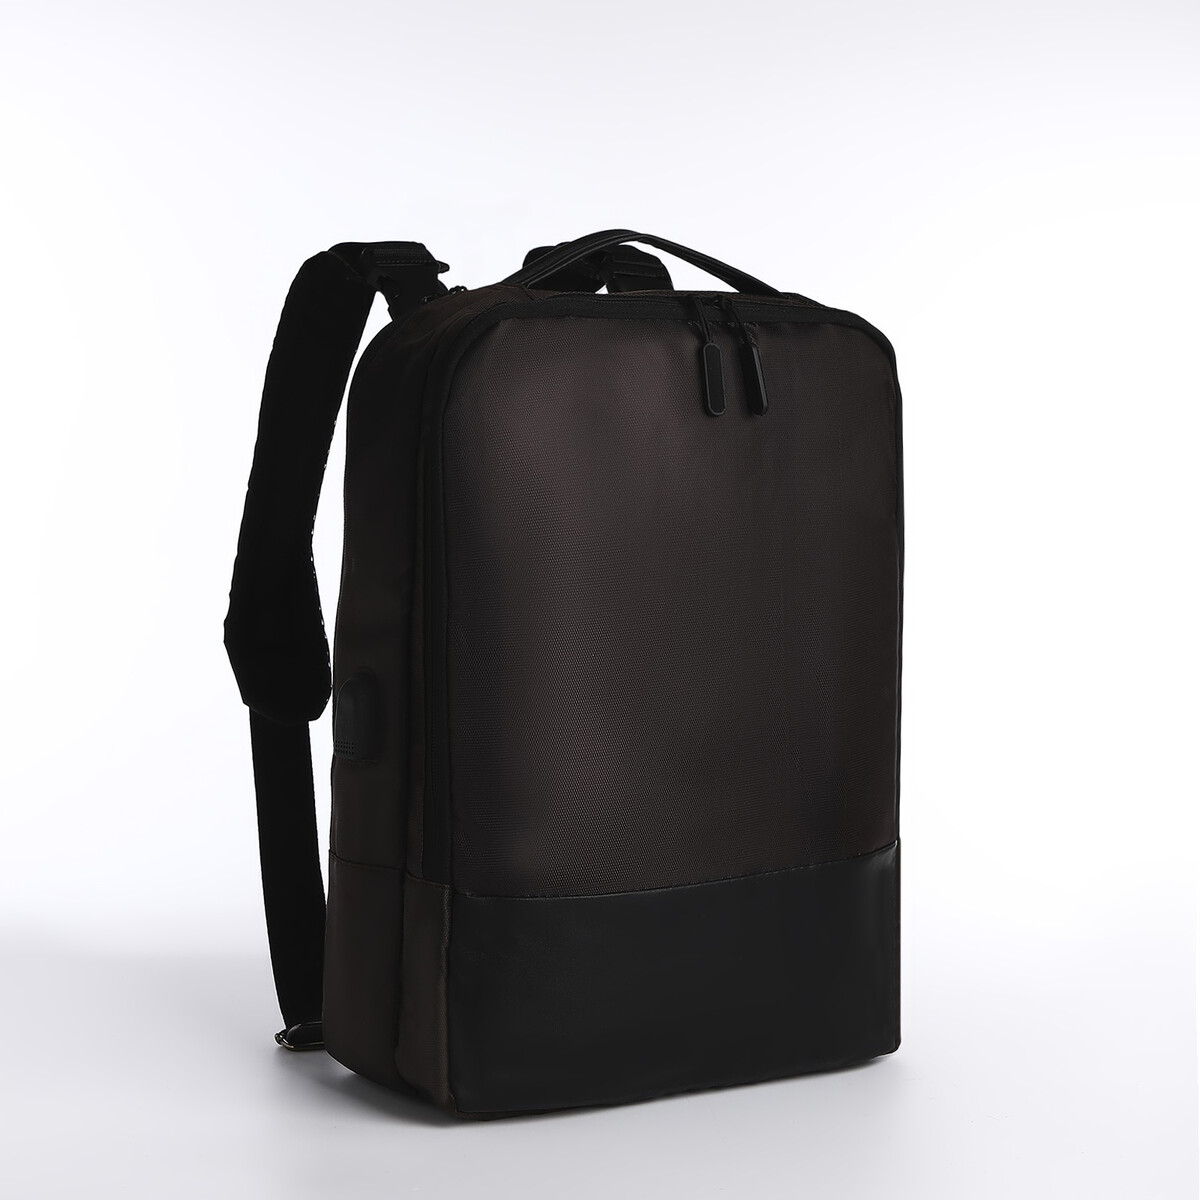 Рюкзак-сумка на молнии, 2 наружных кармана, цвет коричневый сумка поясная на молнии 2 наружных кармана коричневый